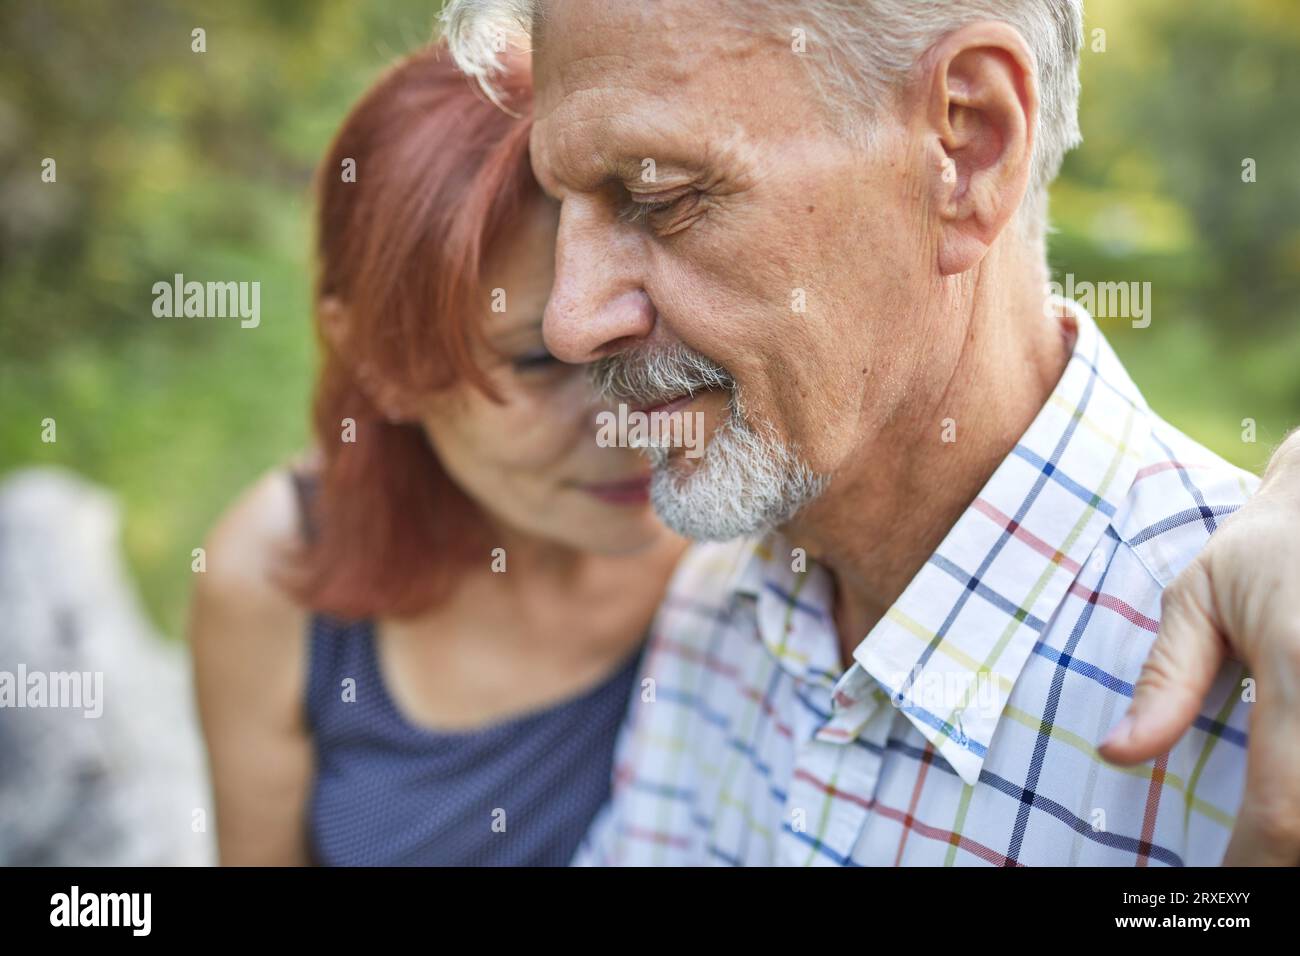 Profilporträt eines ruhigen älteren Mannes, der neben der Frau nach unten schaut Stockfoto